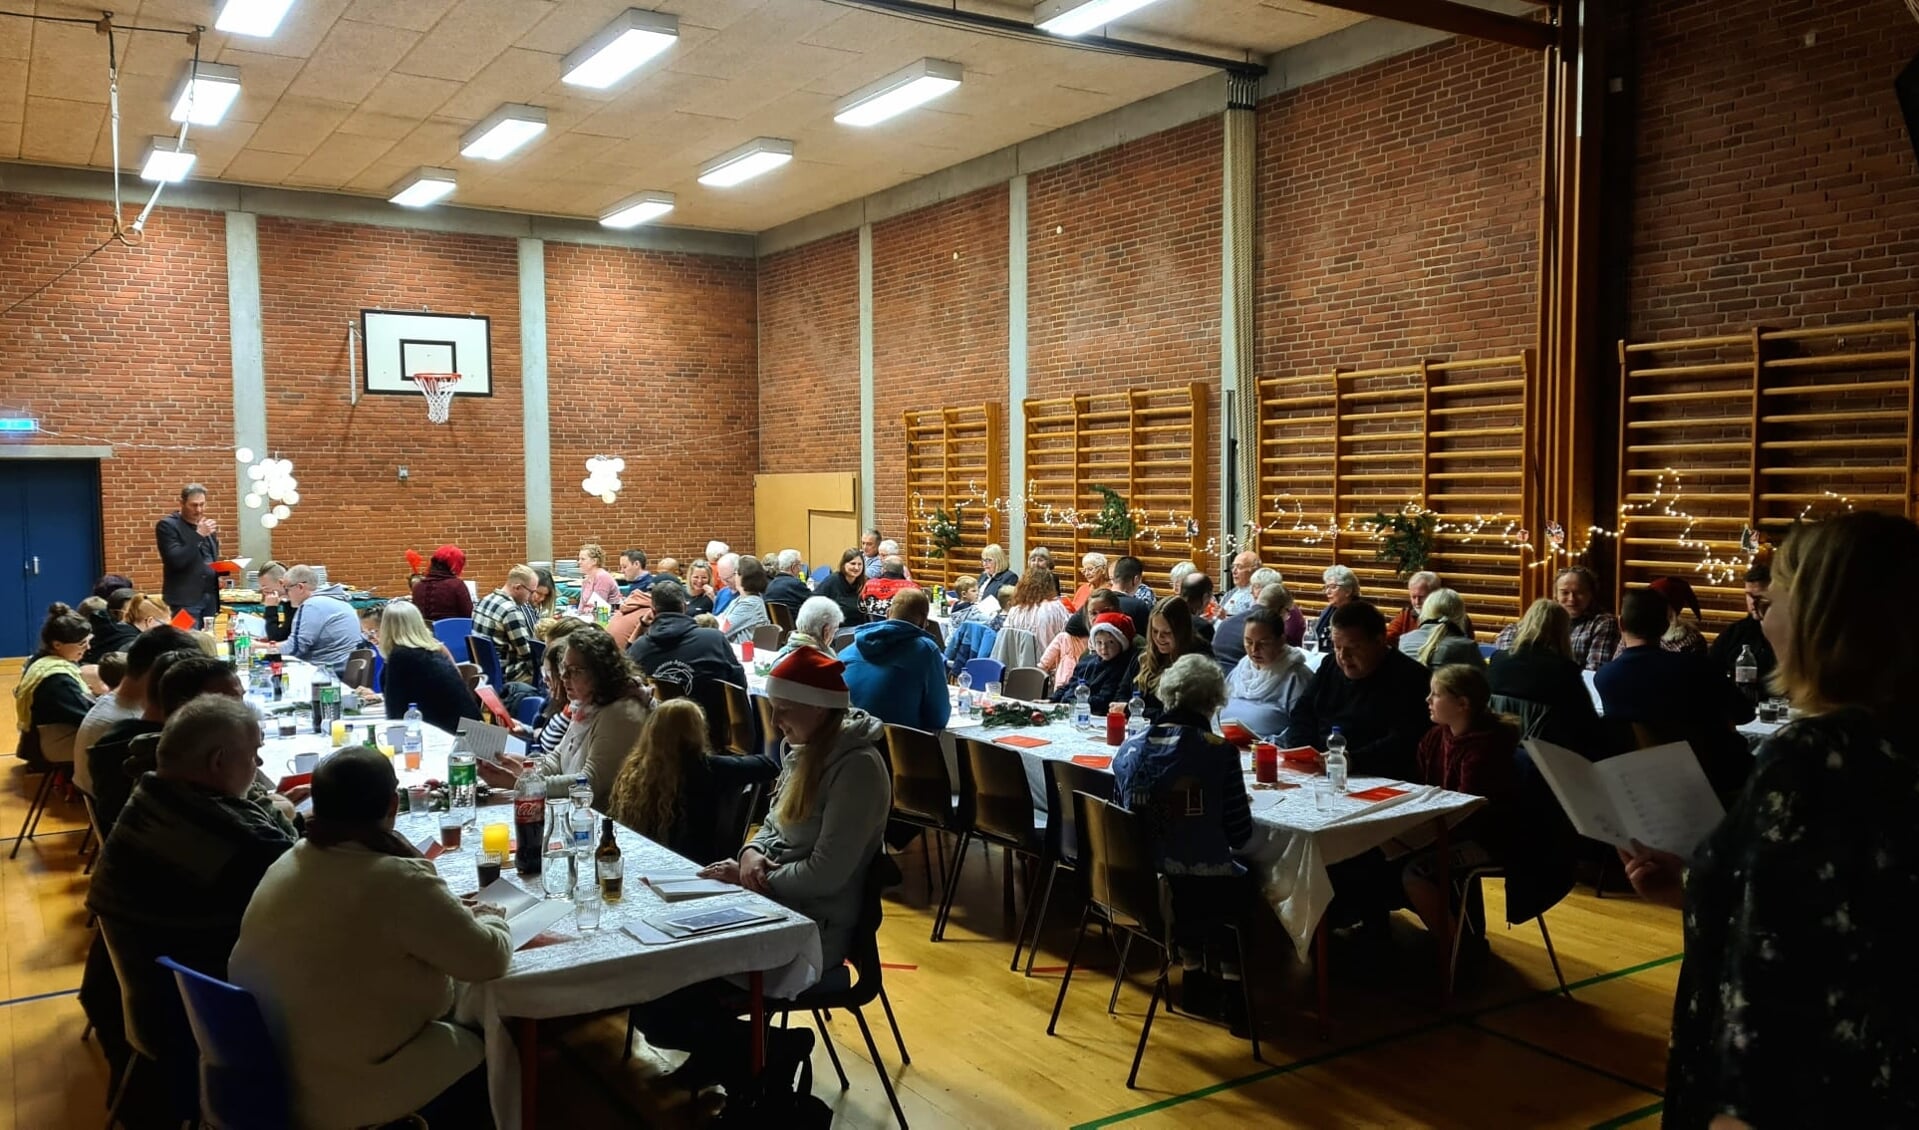 Mere end 100 gæster havde lyst til at mødes over en ægte dansk julefrokost i Trene-Skolens gymnastiksal i Frørup.